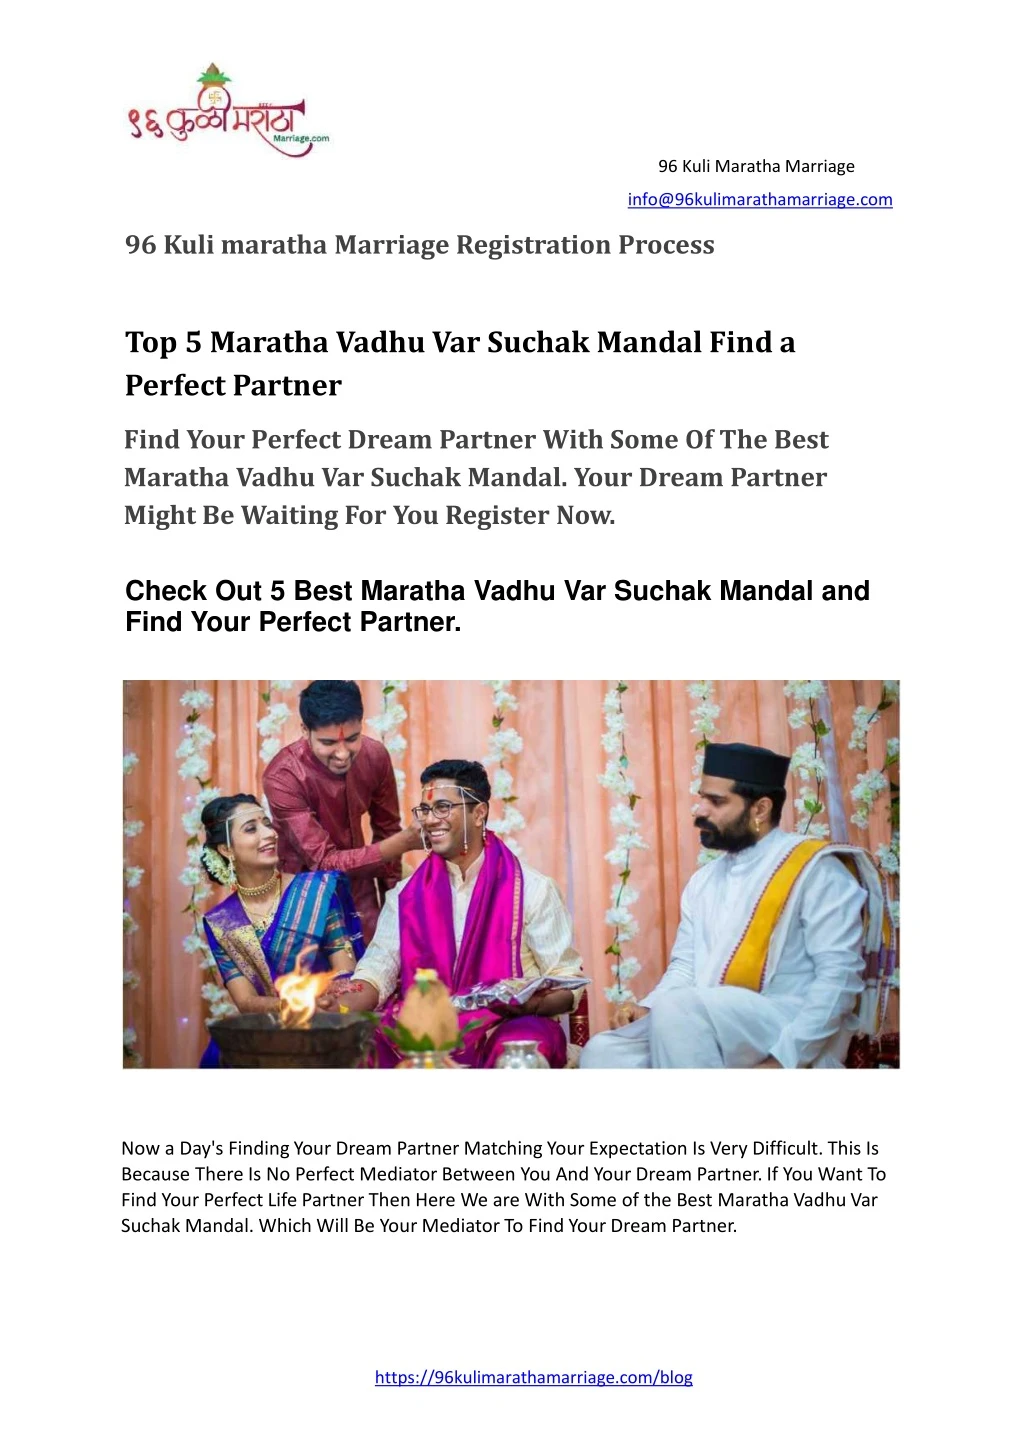 96 kuli maratha marriage